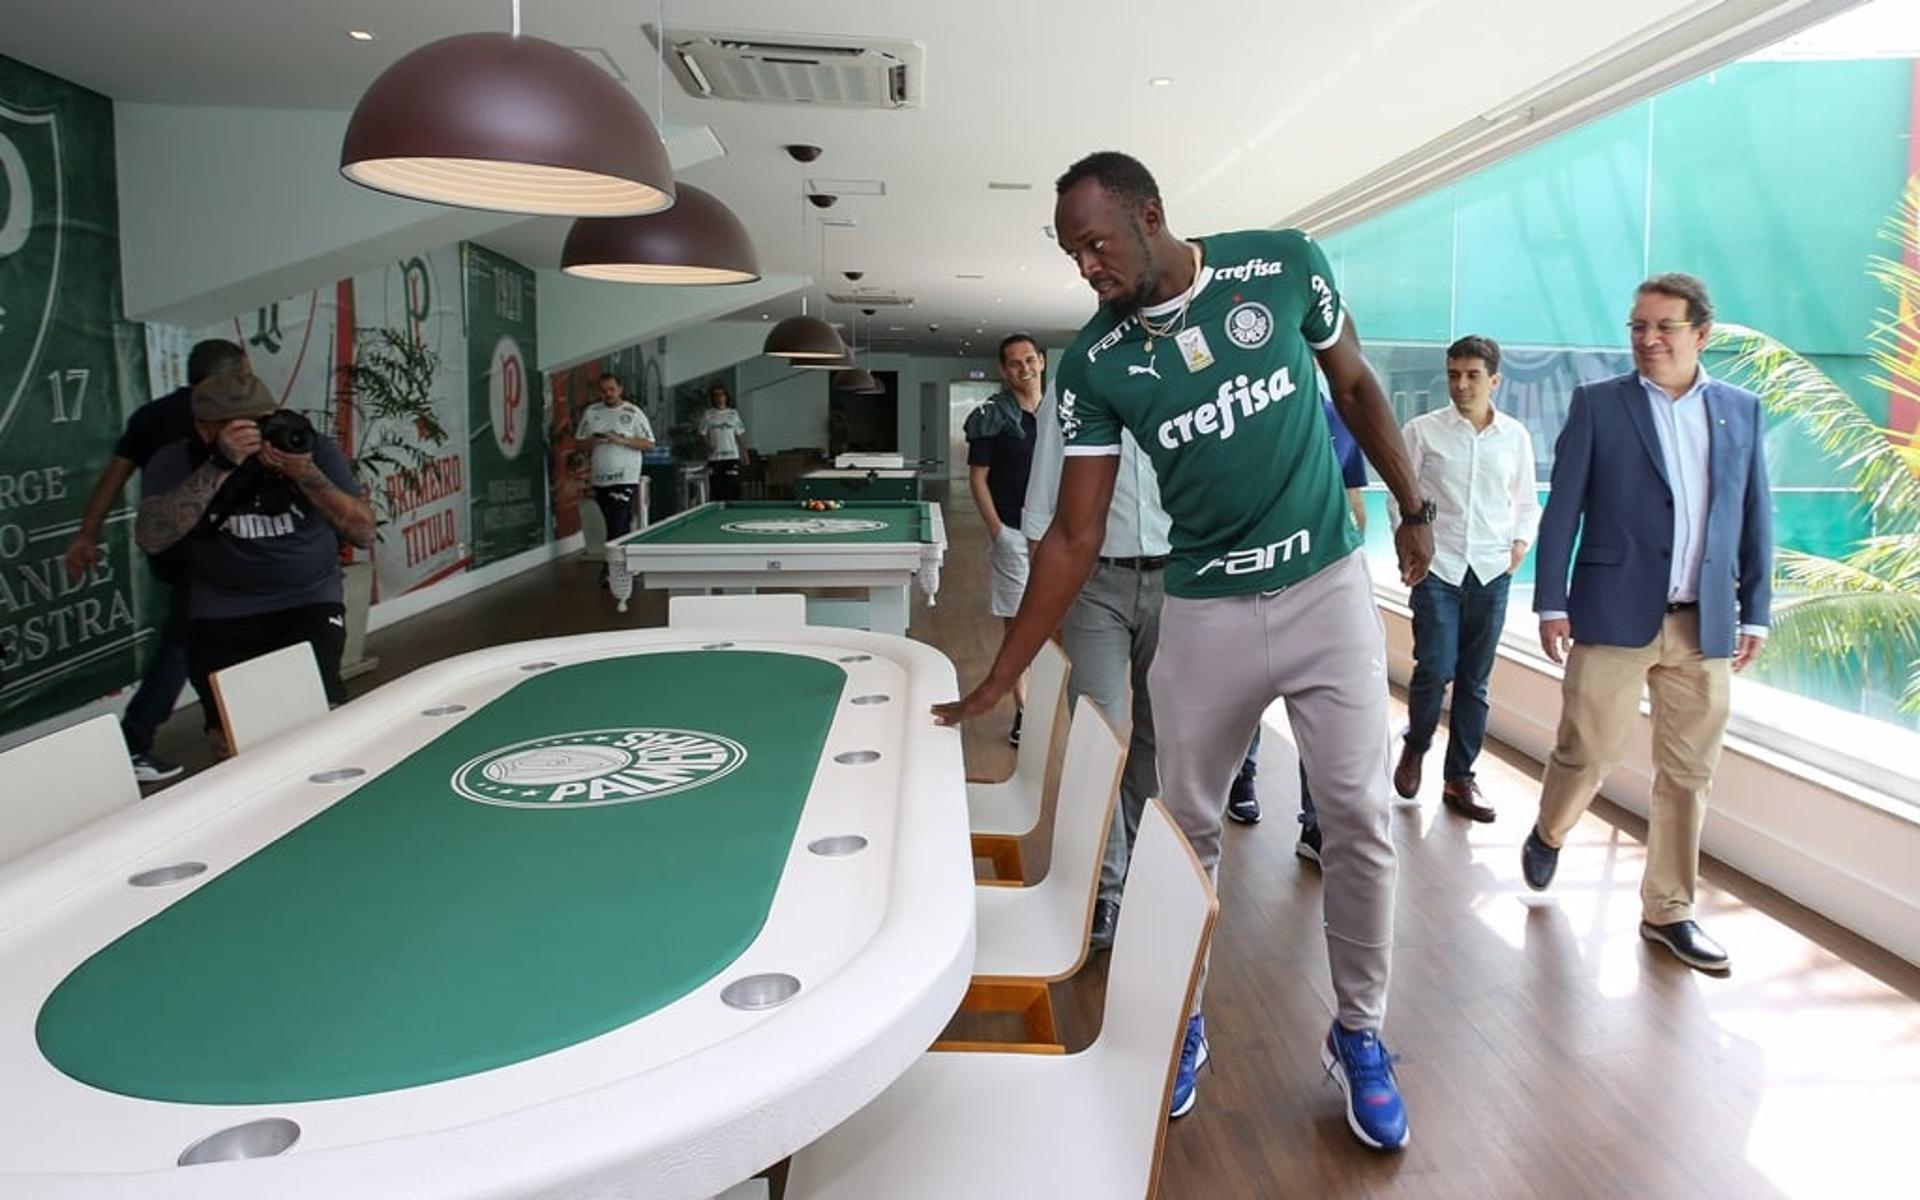 Usain Bolt visitou a Academia de Futebol nesta sexta-feira e encheu o lugar de elogios